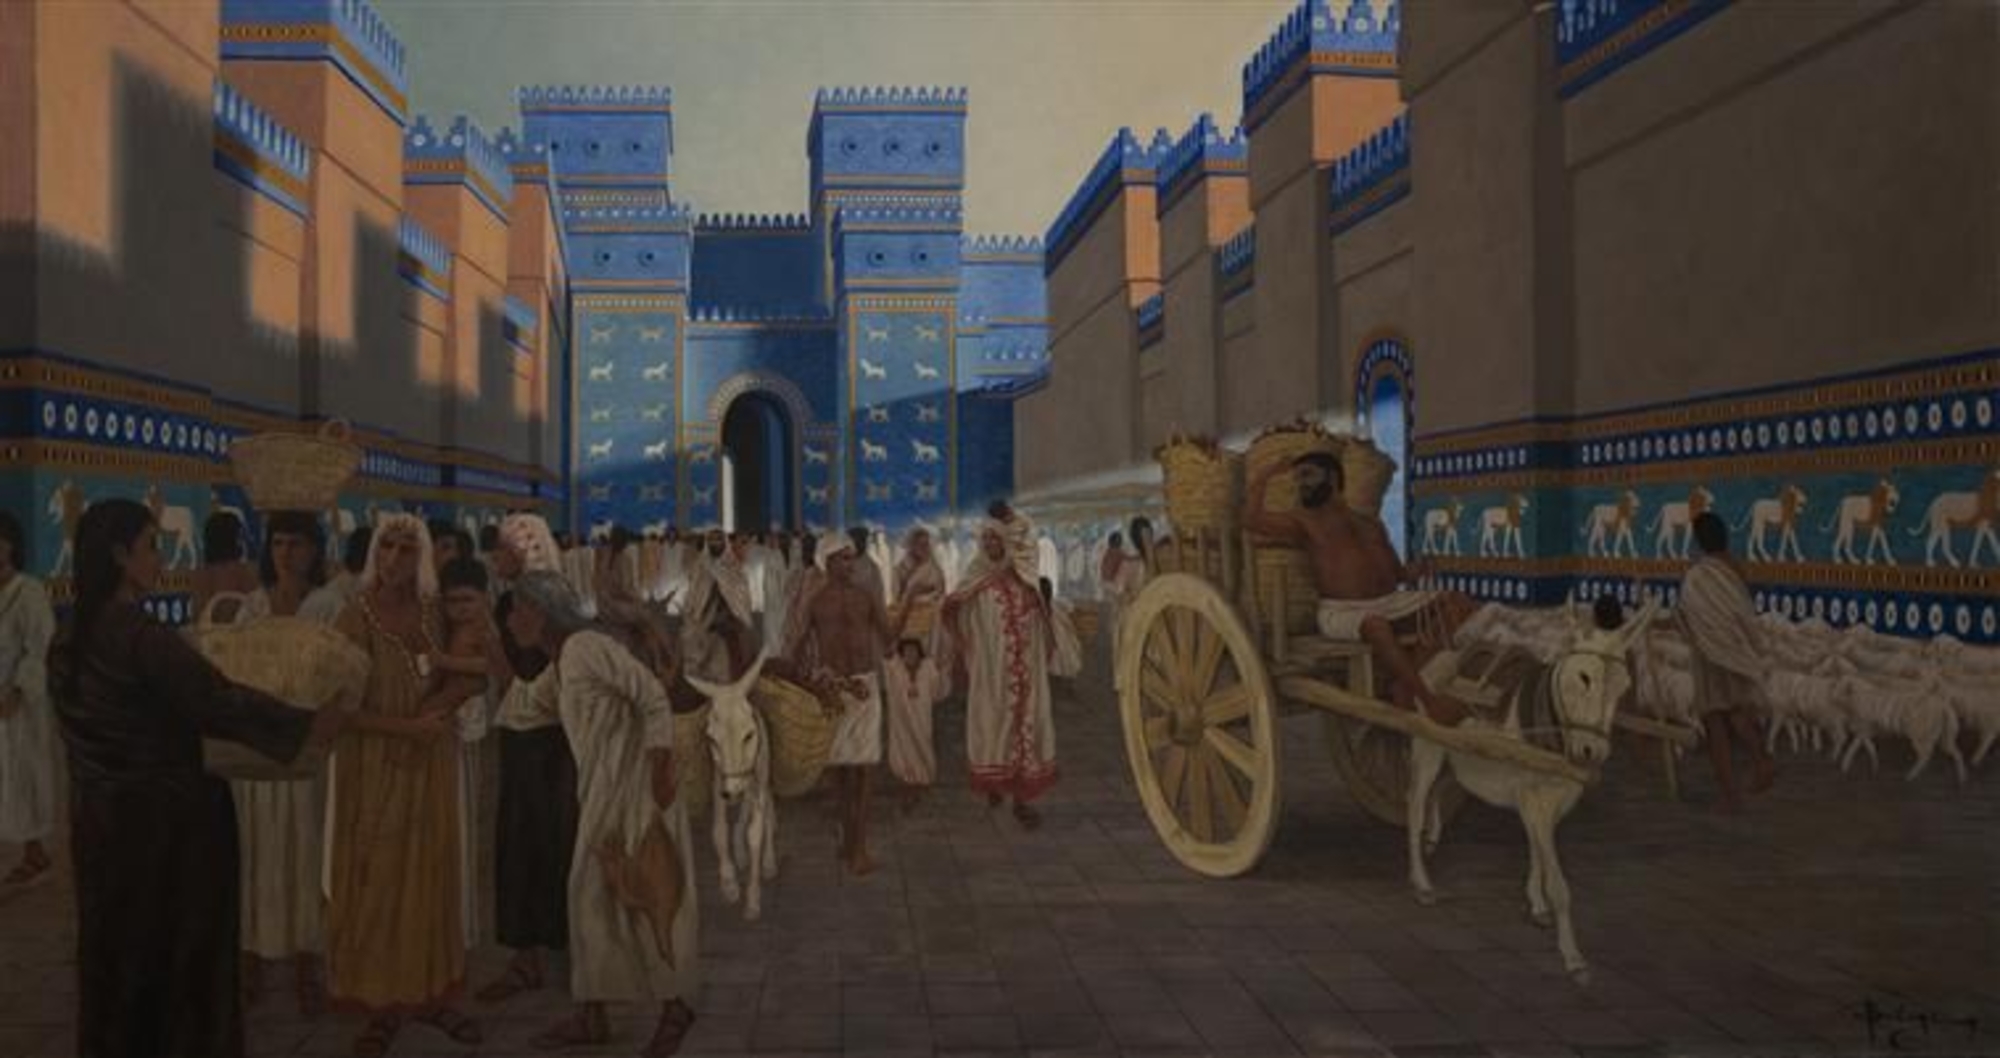 Scène de rue autour de la Porte d'Ishtar Oeuvre de Balogh Balage, représentant la Voie Processionnelle de Babylone et la Porte d'Ishtar en arrière-plan.  BALAGE BALOGH - PHOTO (C) BALAGE BALOGH, DIST. RMN-GRAND PALAIS / BALAGE BALOGH